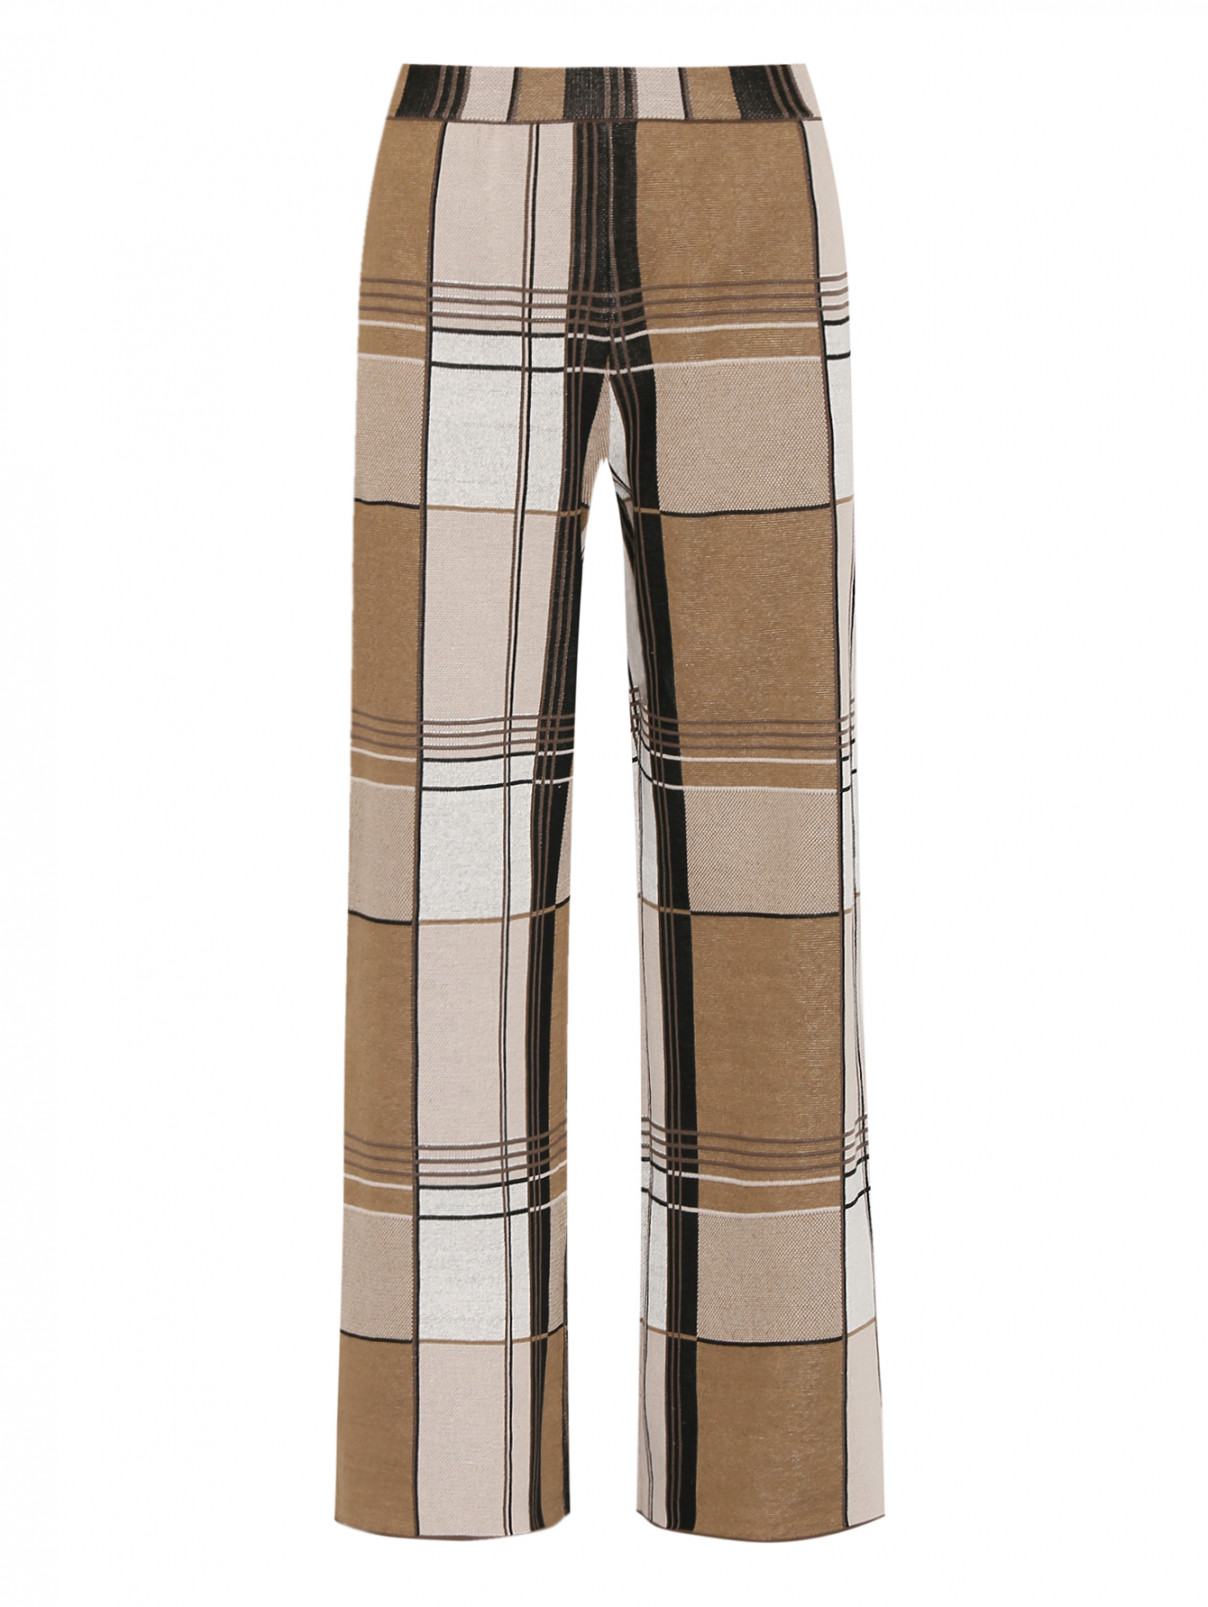 Трикотажные брюки из хлопка и льна Paul Smith  –  Общий вид  – Цвет:  Коричневый